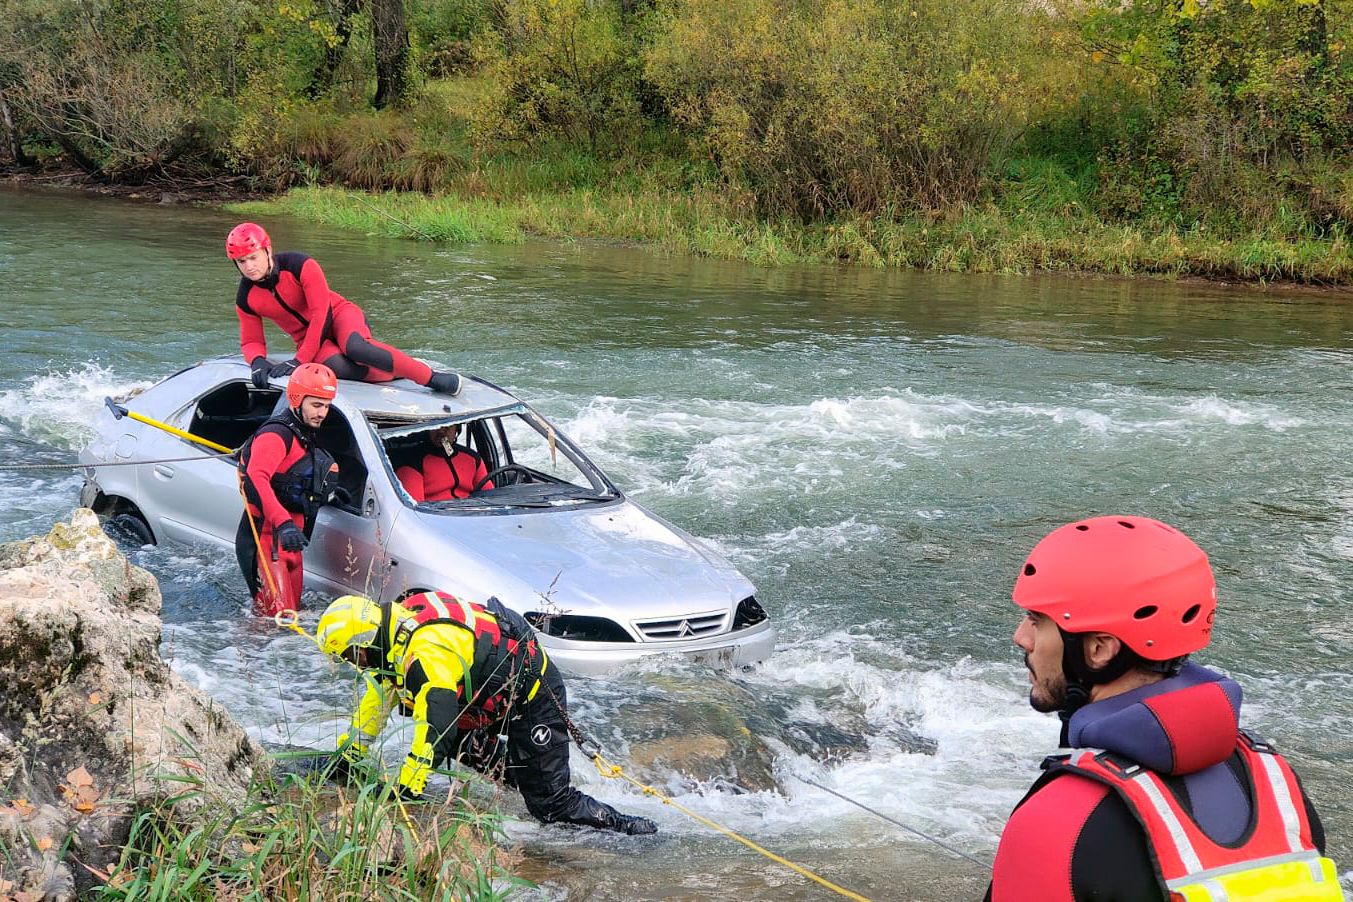 Simulacro de rescate de la Agencia de Protección Civil y Emergencias llevado a cabo en el río Esla en Sabero